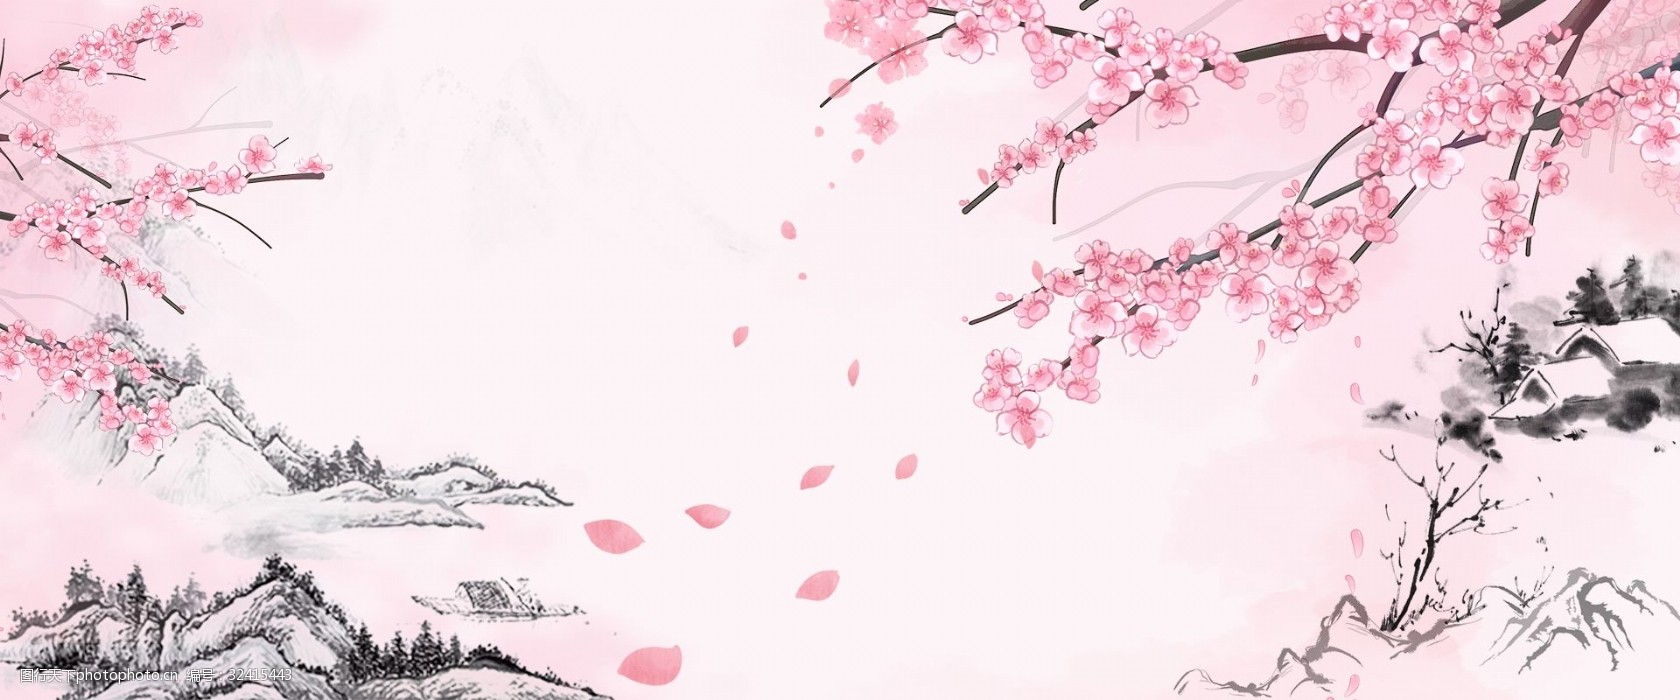 中国风 古典 水墨 桃花十里 桃花 粉色 意境 海报